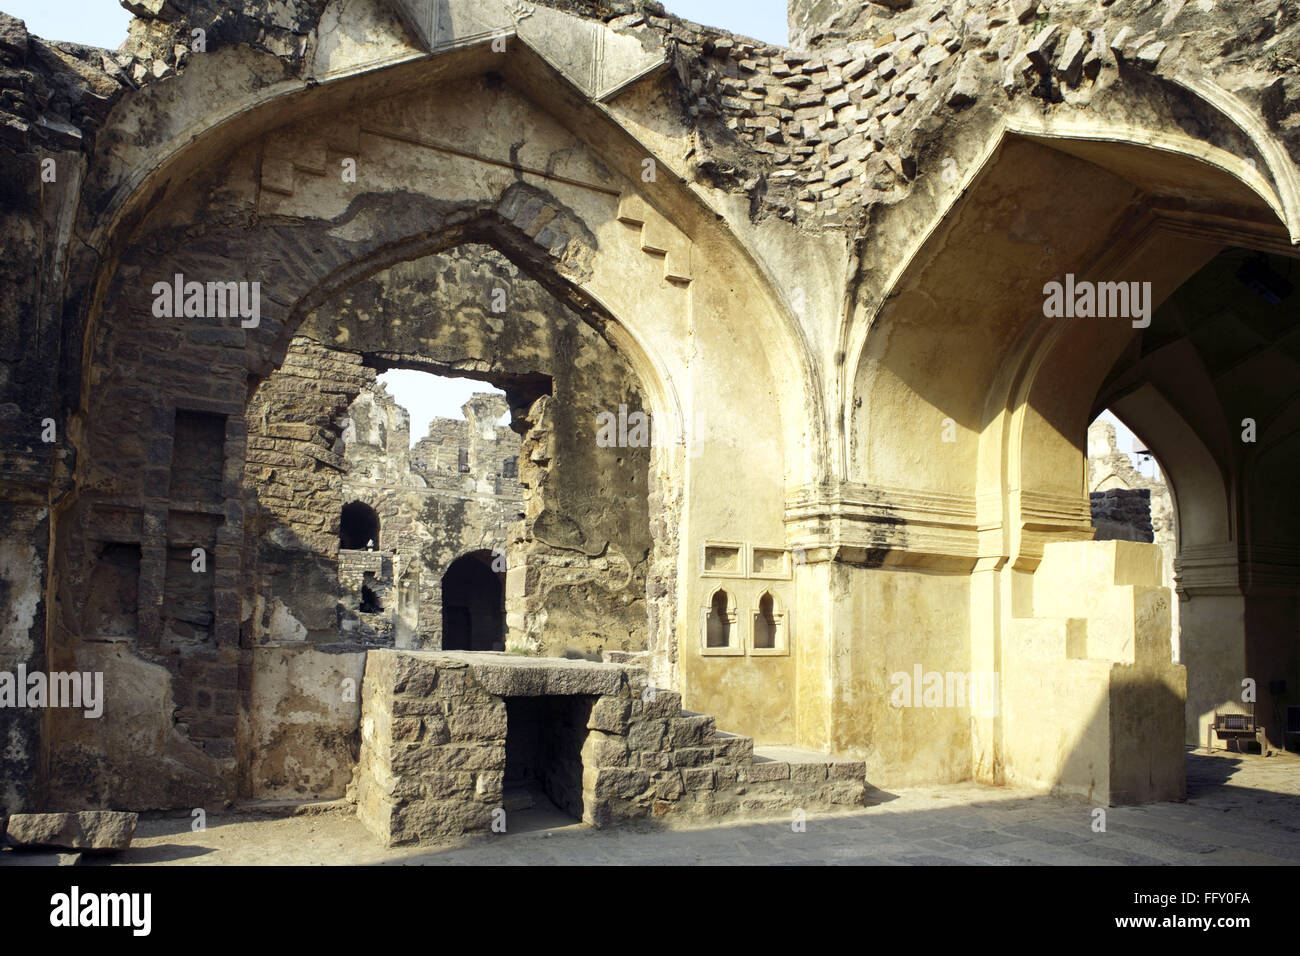 Vue des ruines de Golconda fort construit par Mohammed Quli Qutb Shah , 16e siècle , Hyderabad Andhra Pradesh, Inde Banque D'Images